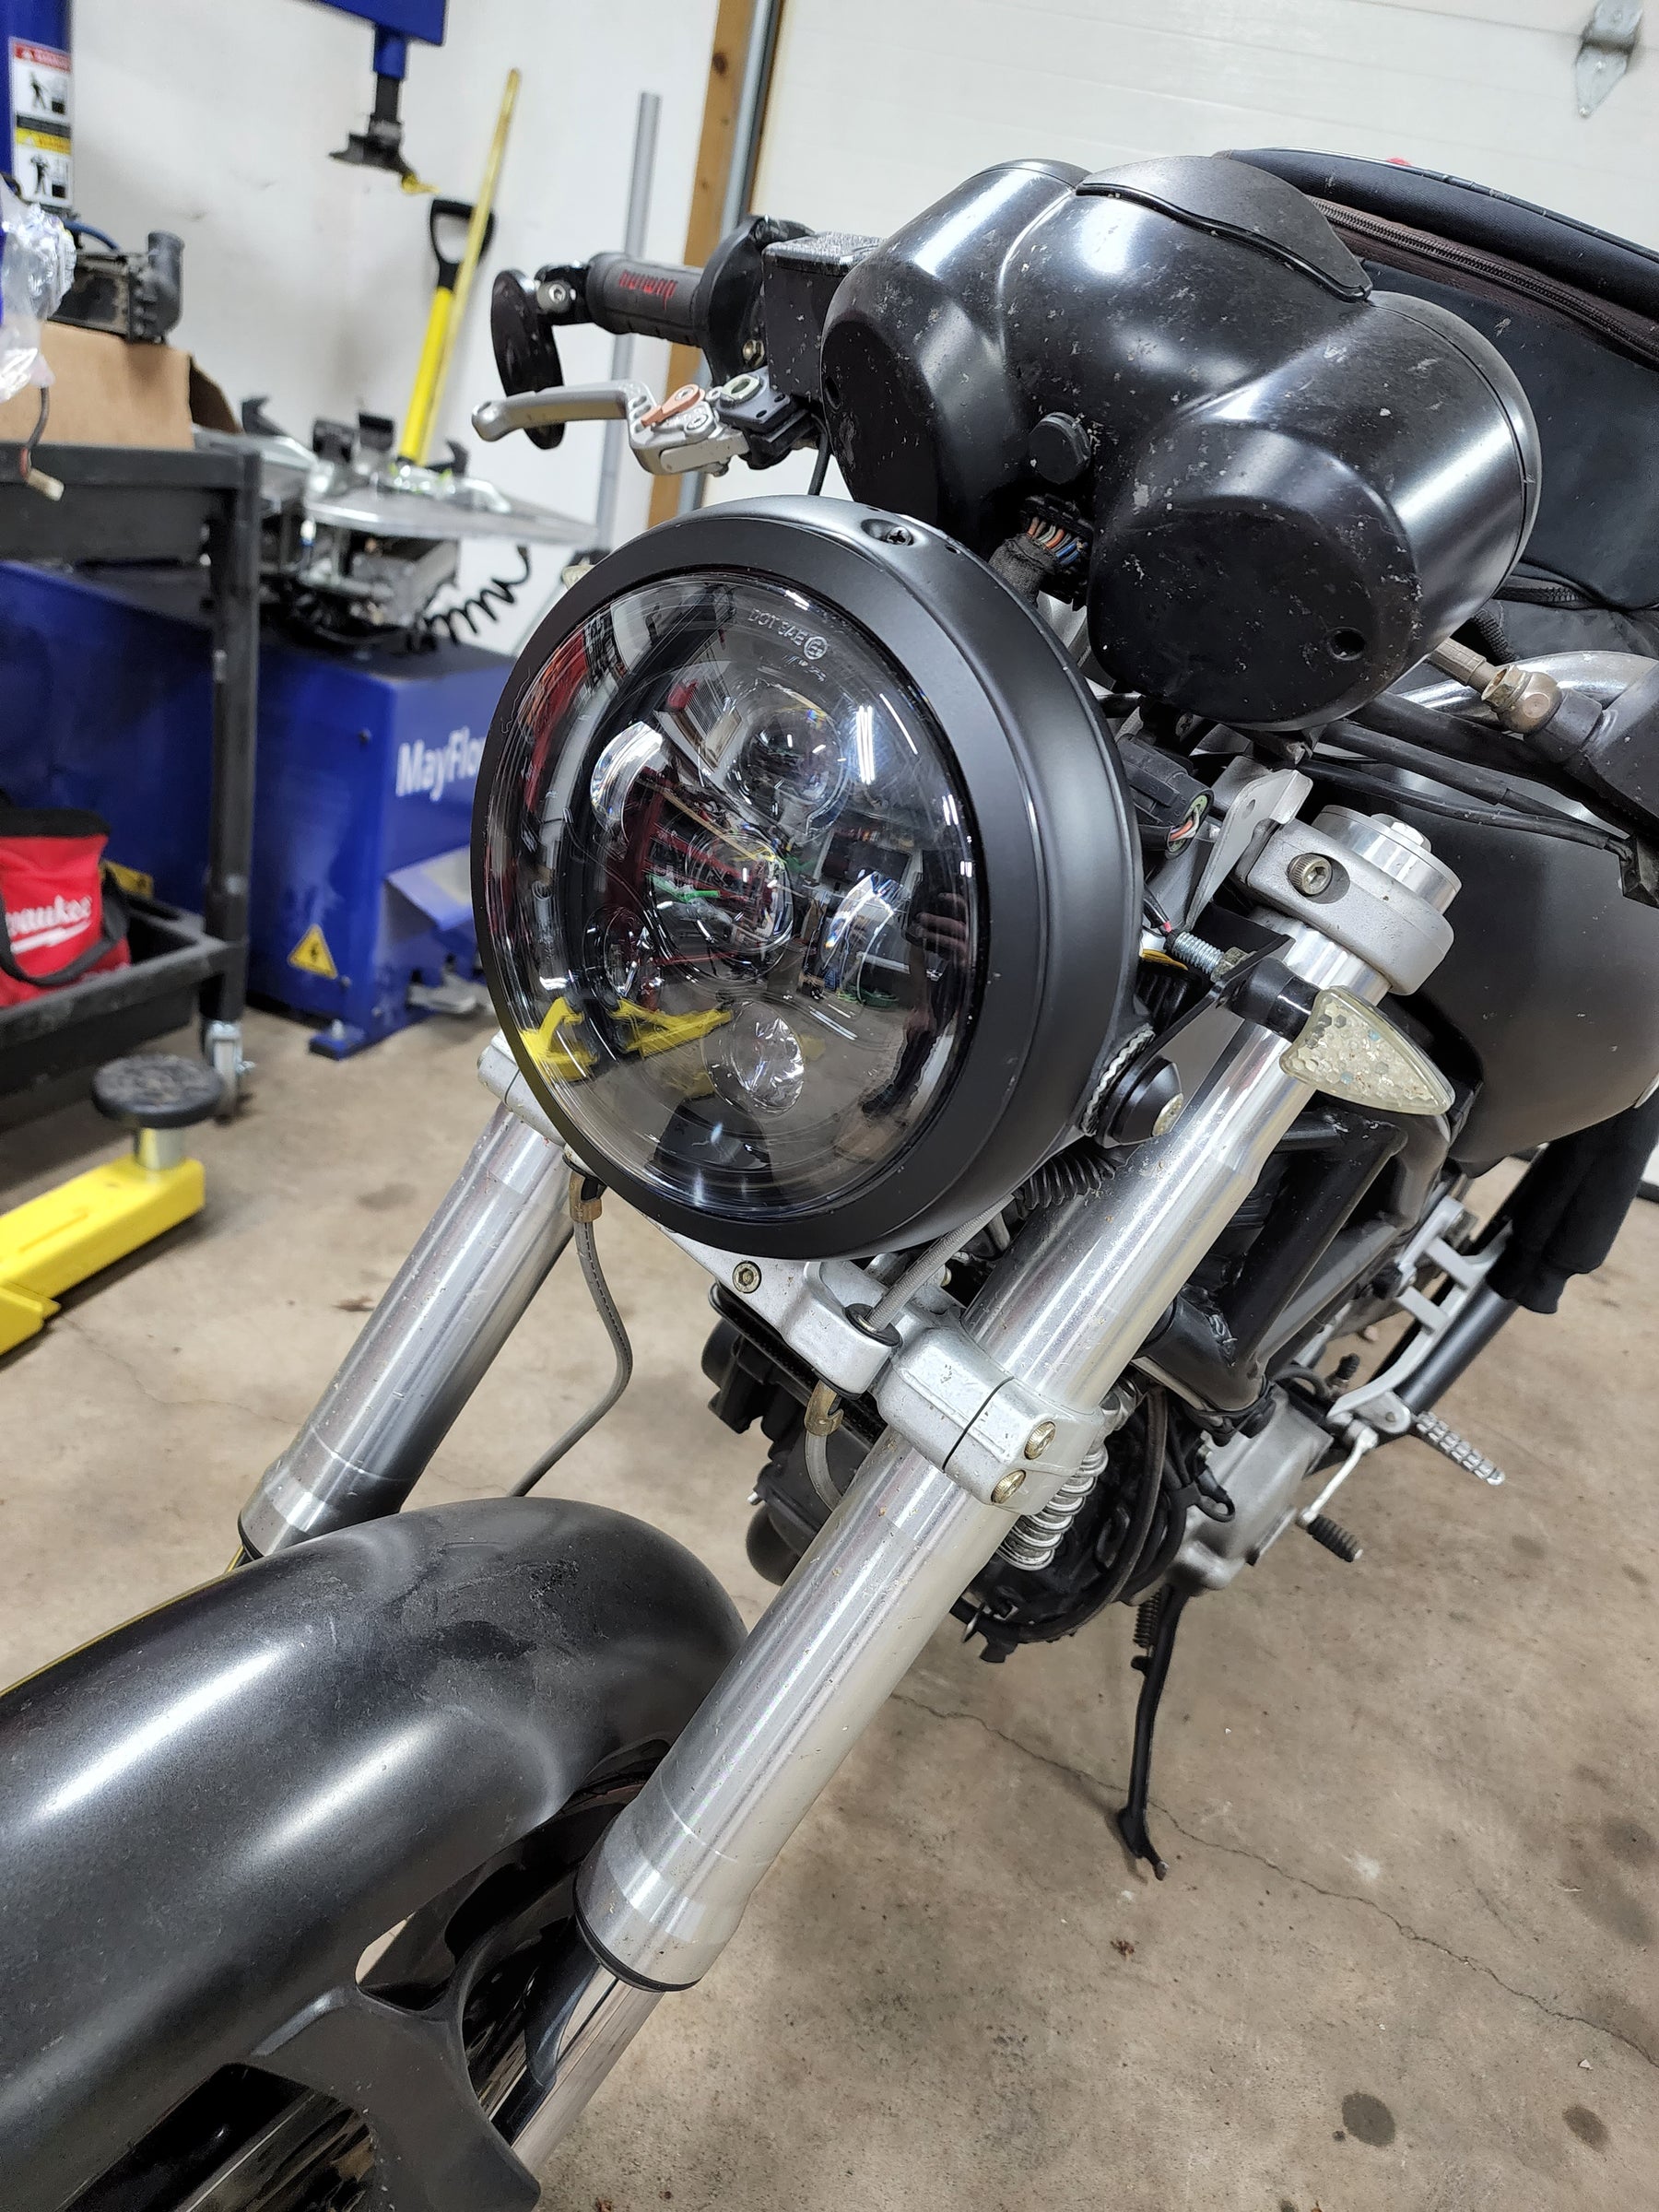 Eagle Lights 7" LED Headlight Kit for Ducati Monster Models